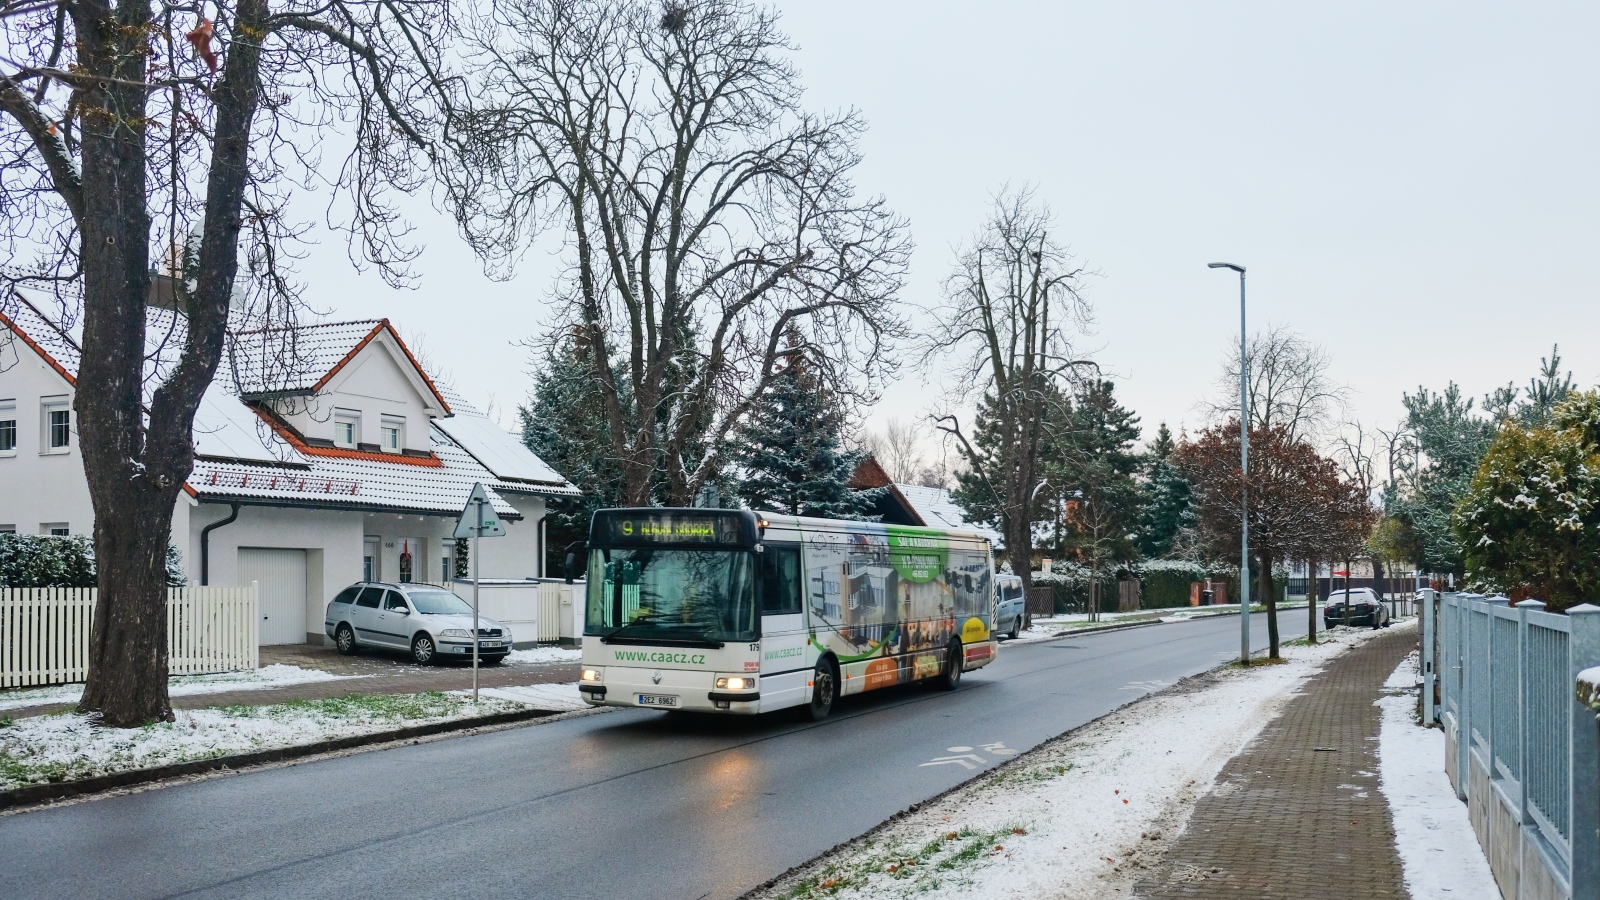 Pardubice, Karosa Citybus 12M.2071 (Irisbus) Nr. 179